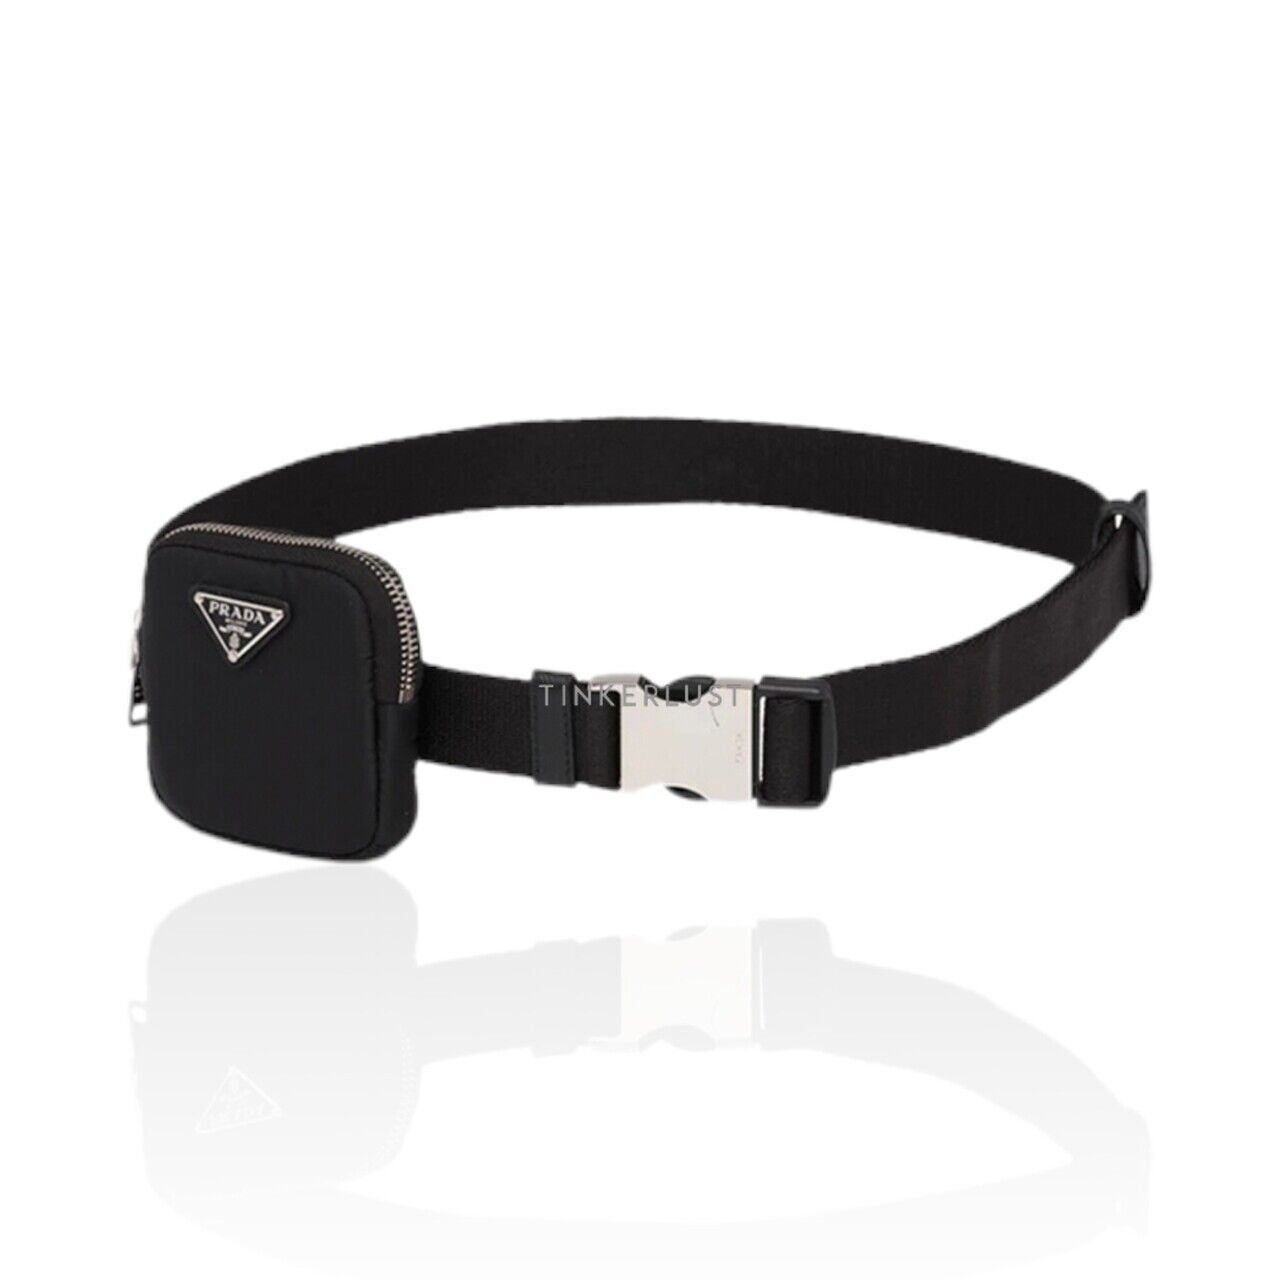 Prada Men Triangle Logo Woven Belt 3cm in Black Nylon with Card Holder